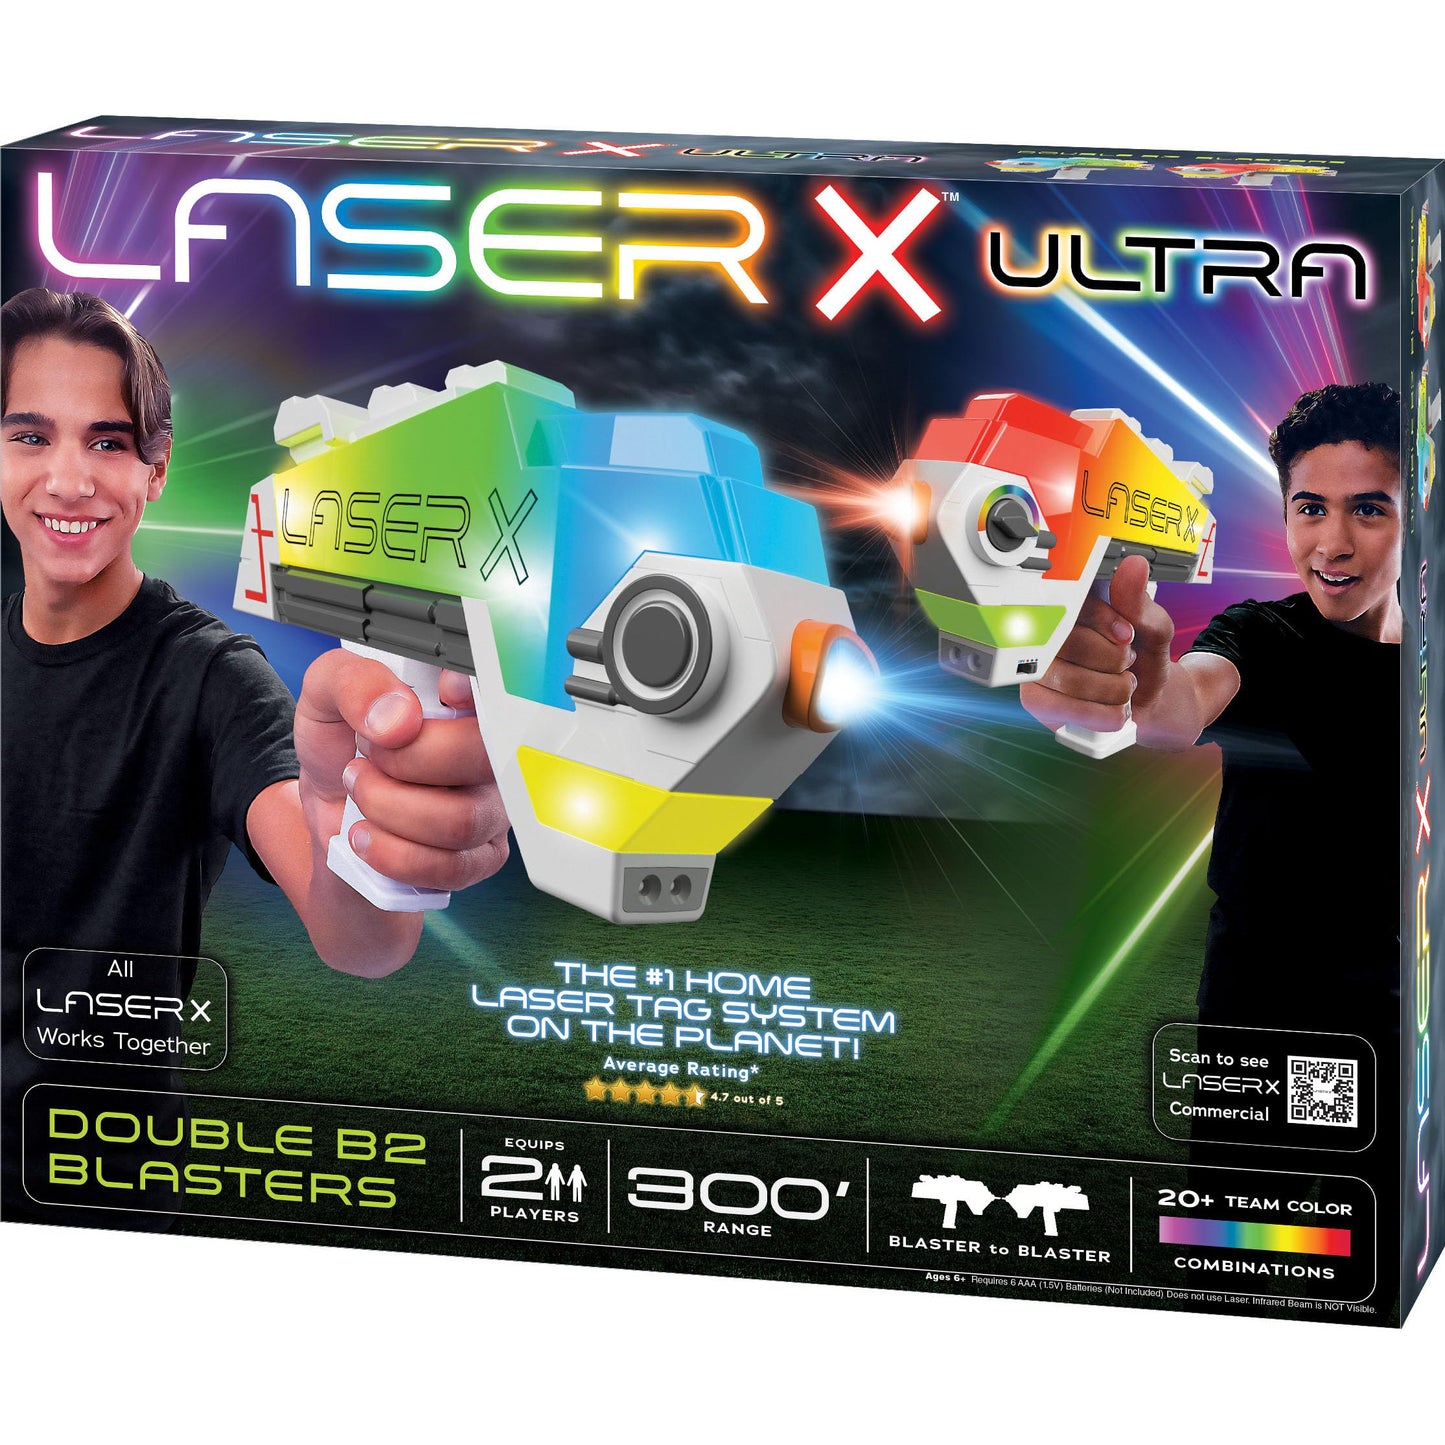 Laser X Ultra Double B2 Blasters